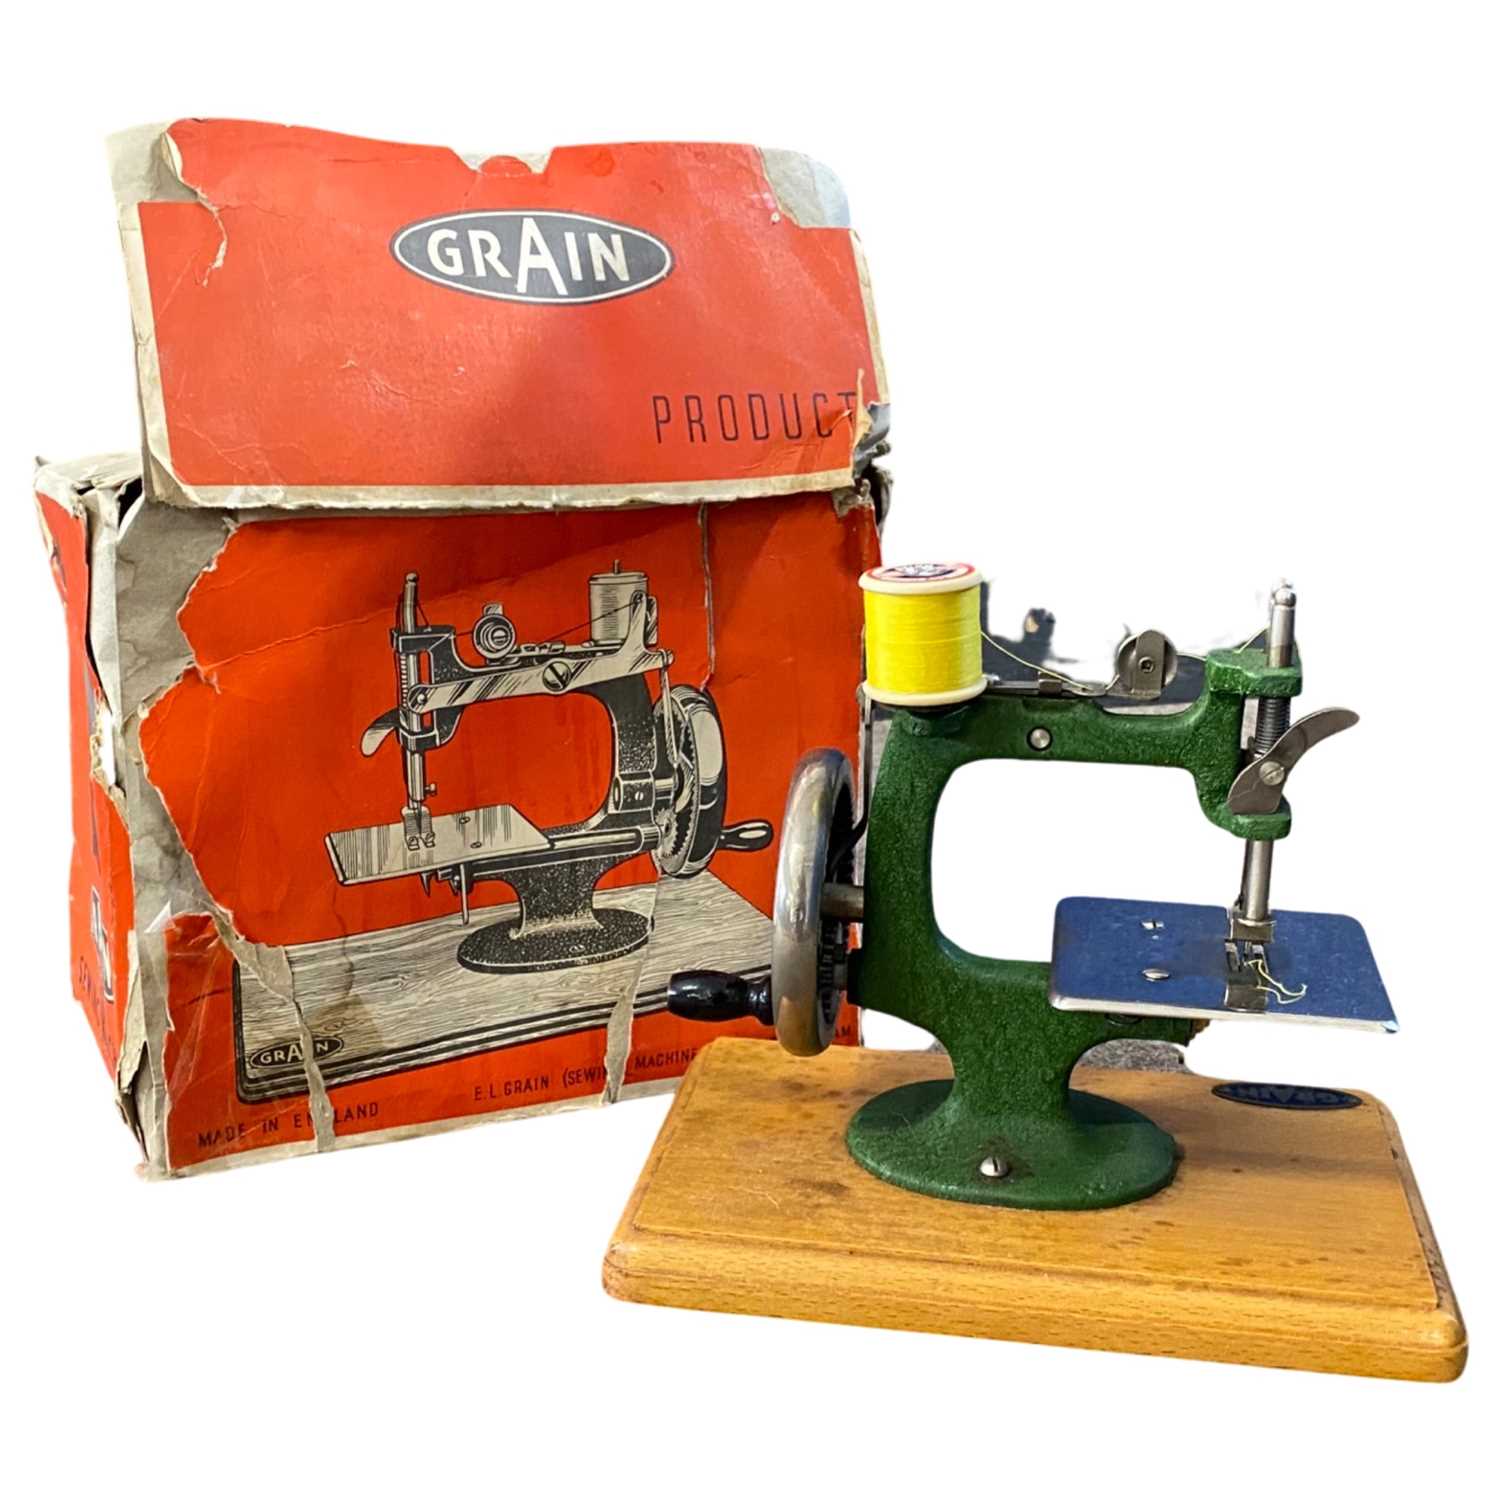 Grain miniature sewing machine in original box